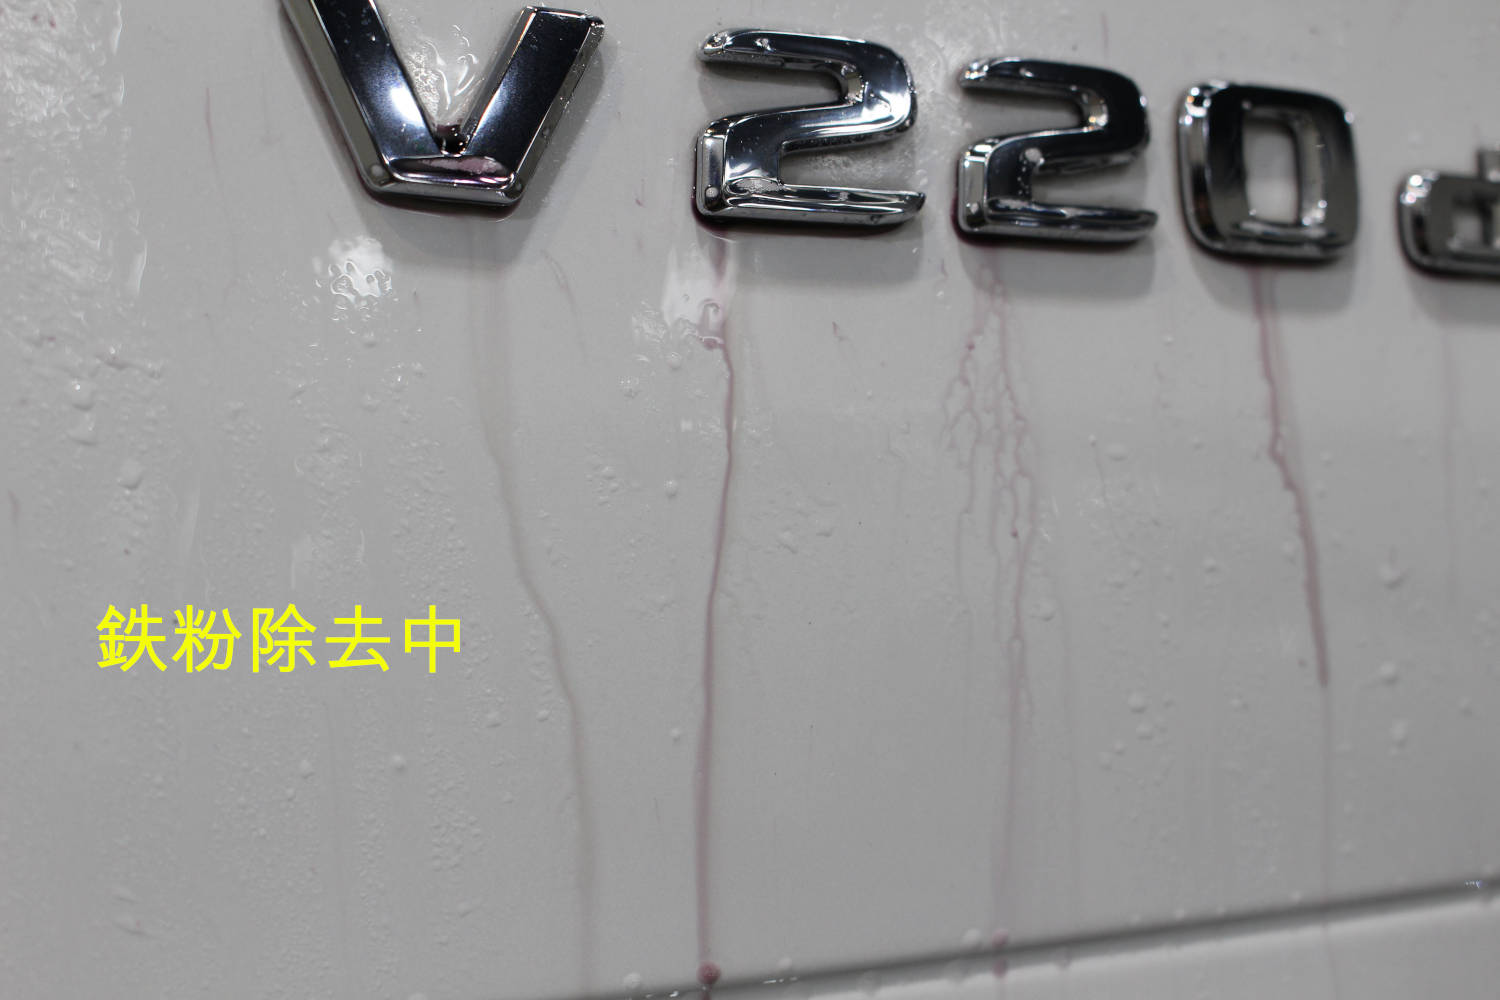 V220d-鉄粉